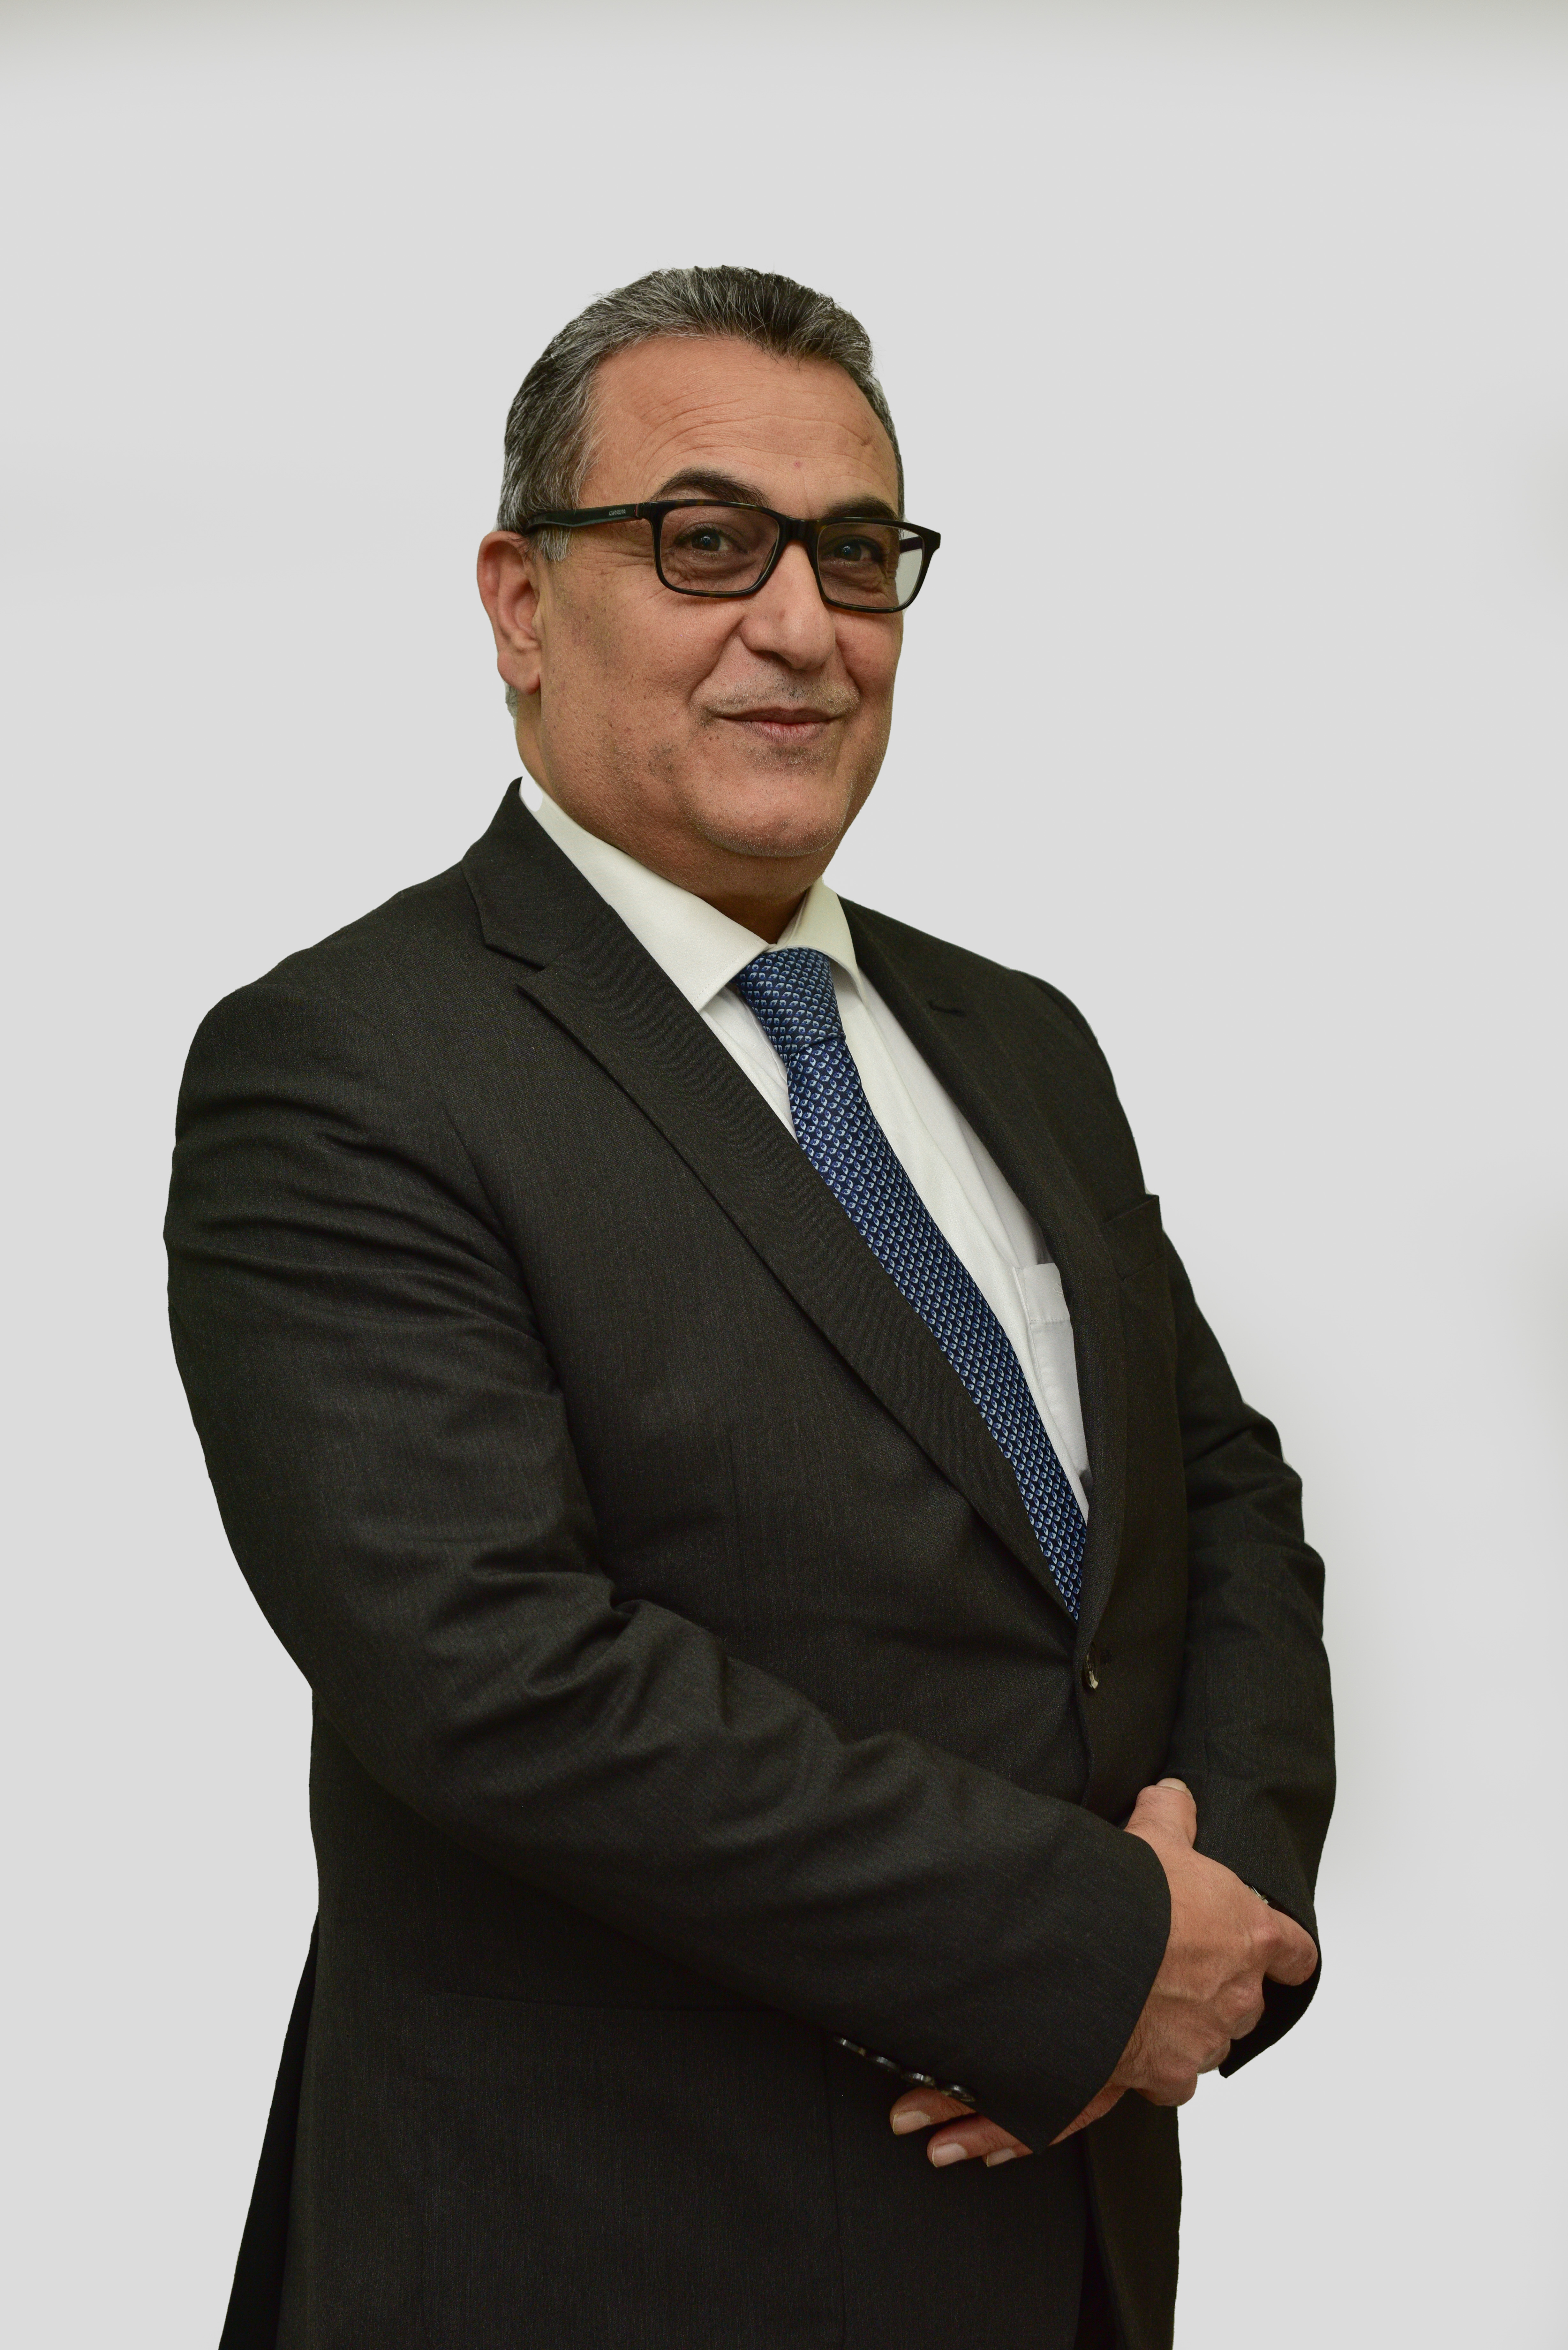 Mr. Hussein Ahmad Kofahi